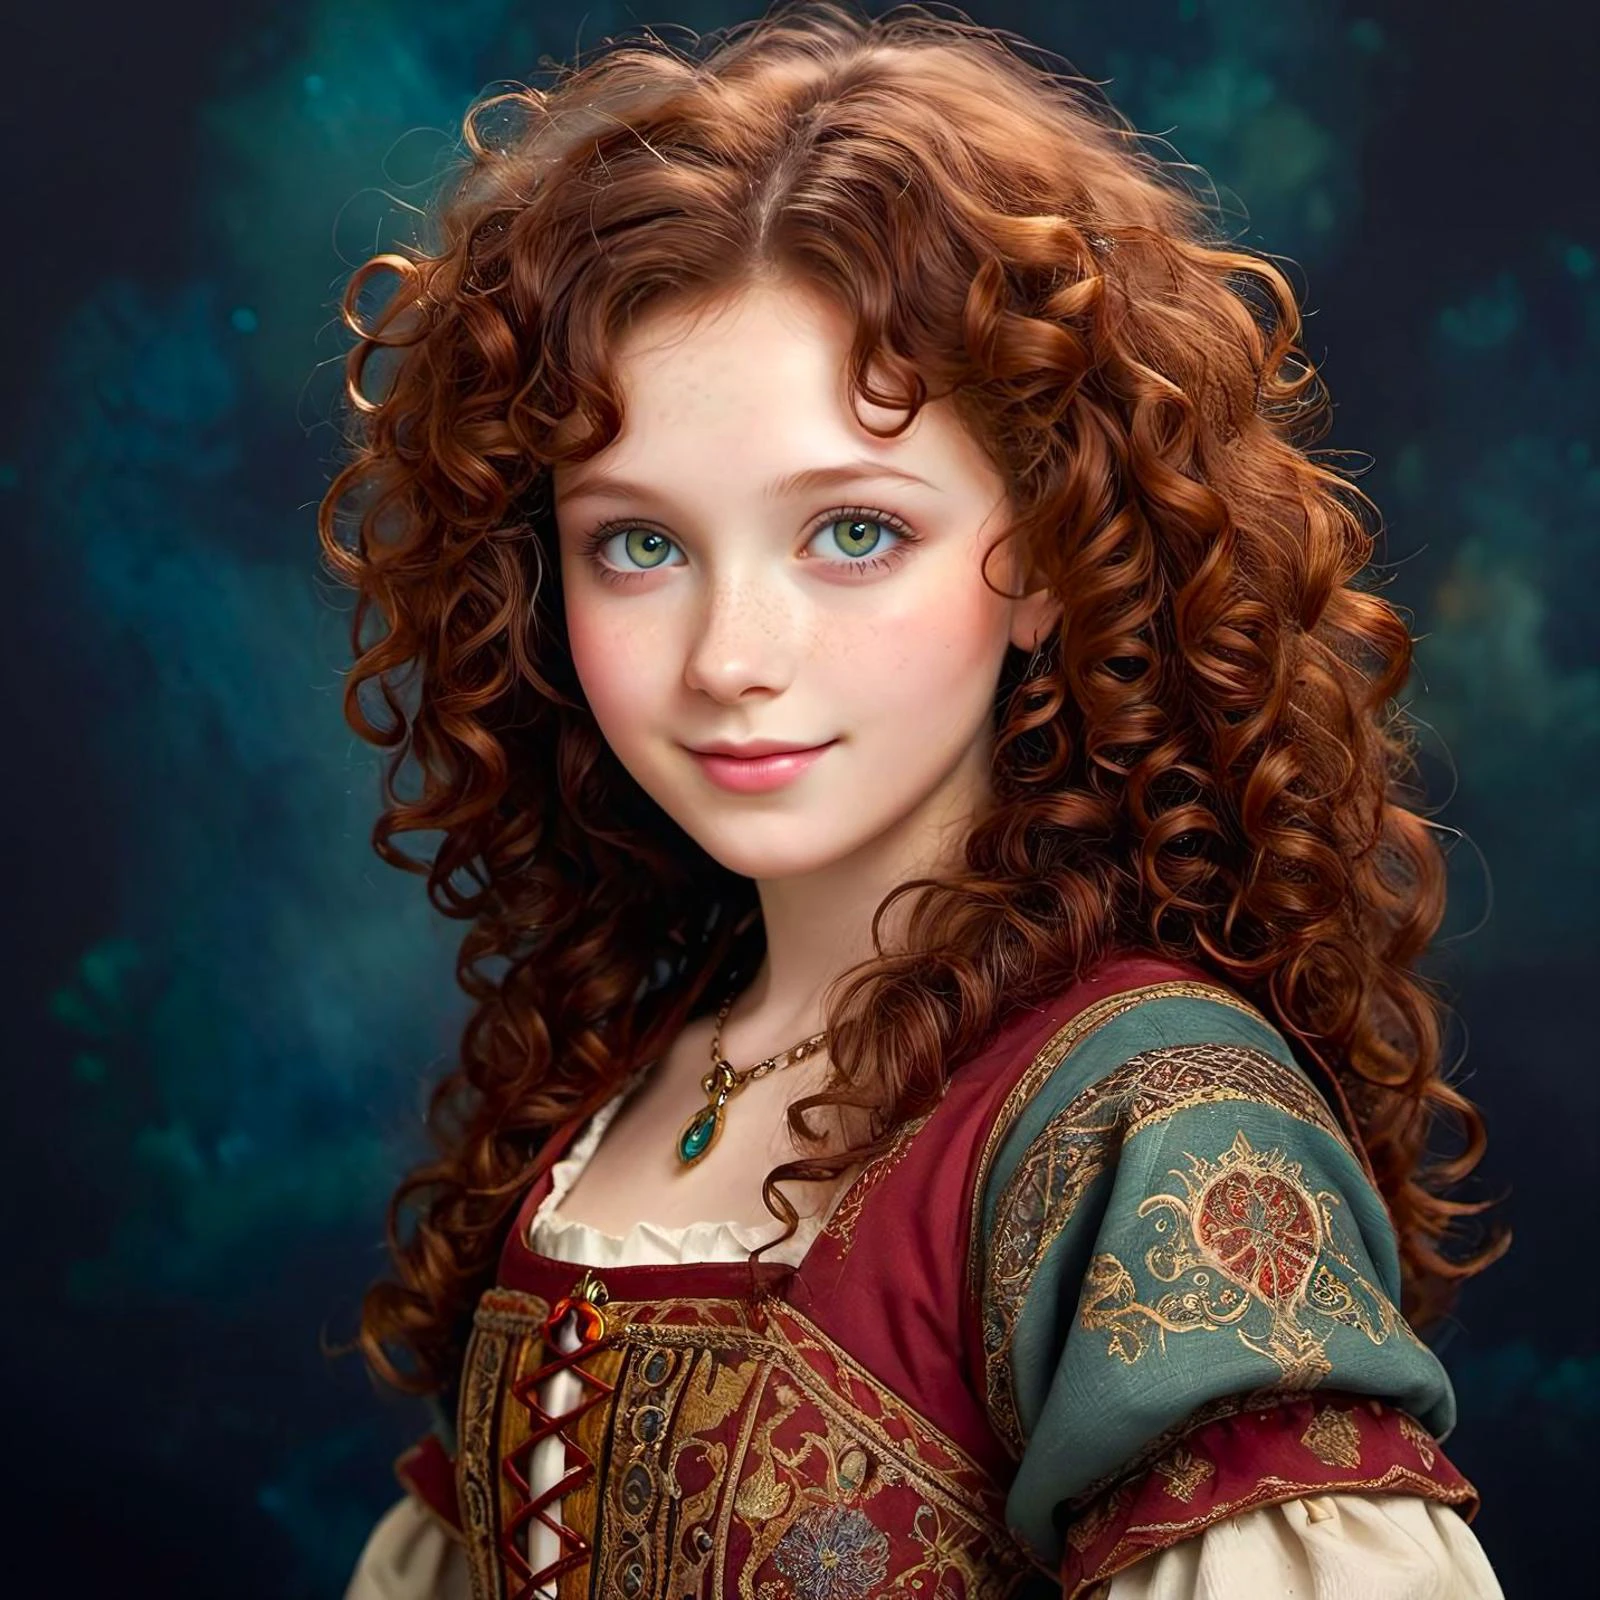 fantaisie médiévale,  une fille en porcelaine de 20 ans , heureux,  texture de peau douce et biologique, visage délicat, yeux de jade, cheveux bouclés brun rouge foncé, éclectique, fond sombre